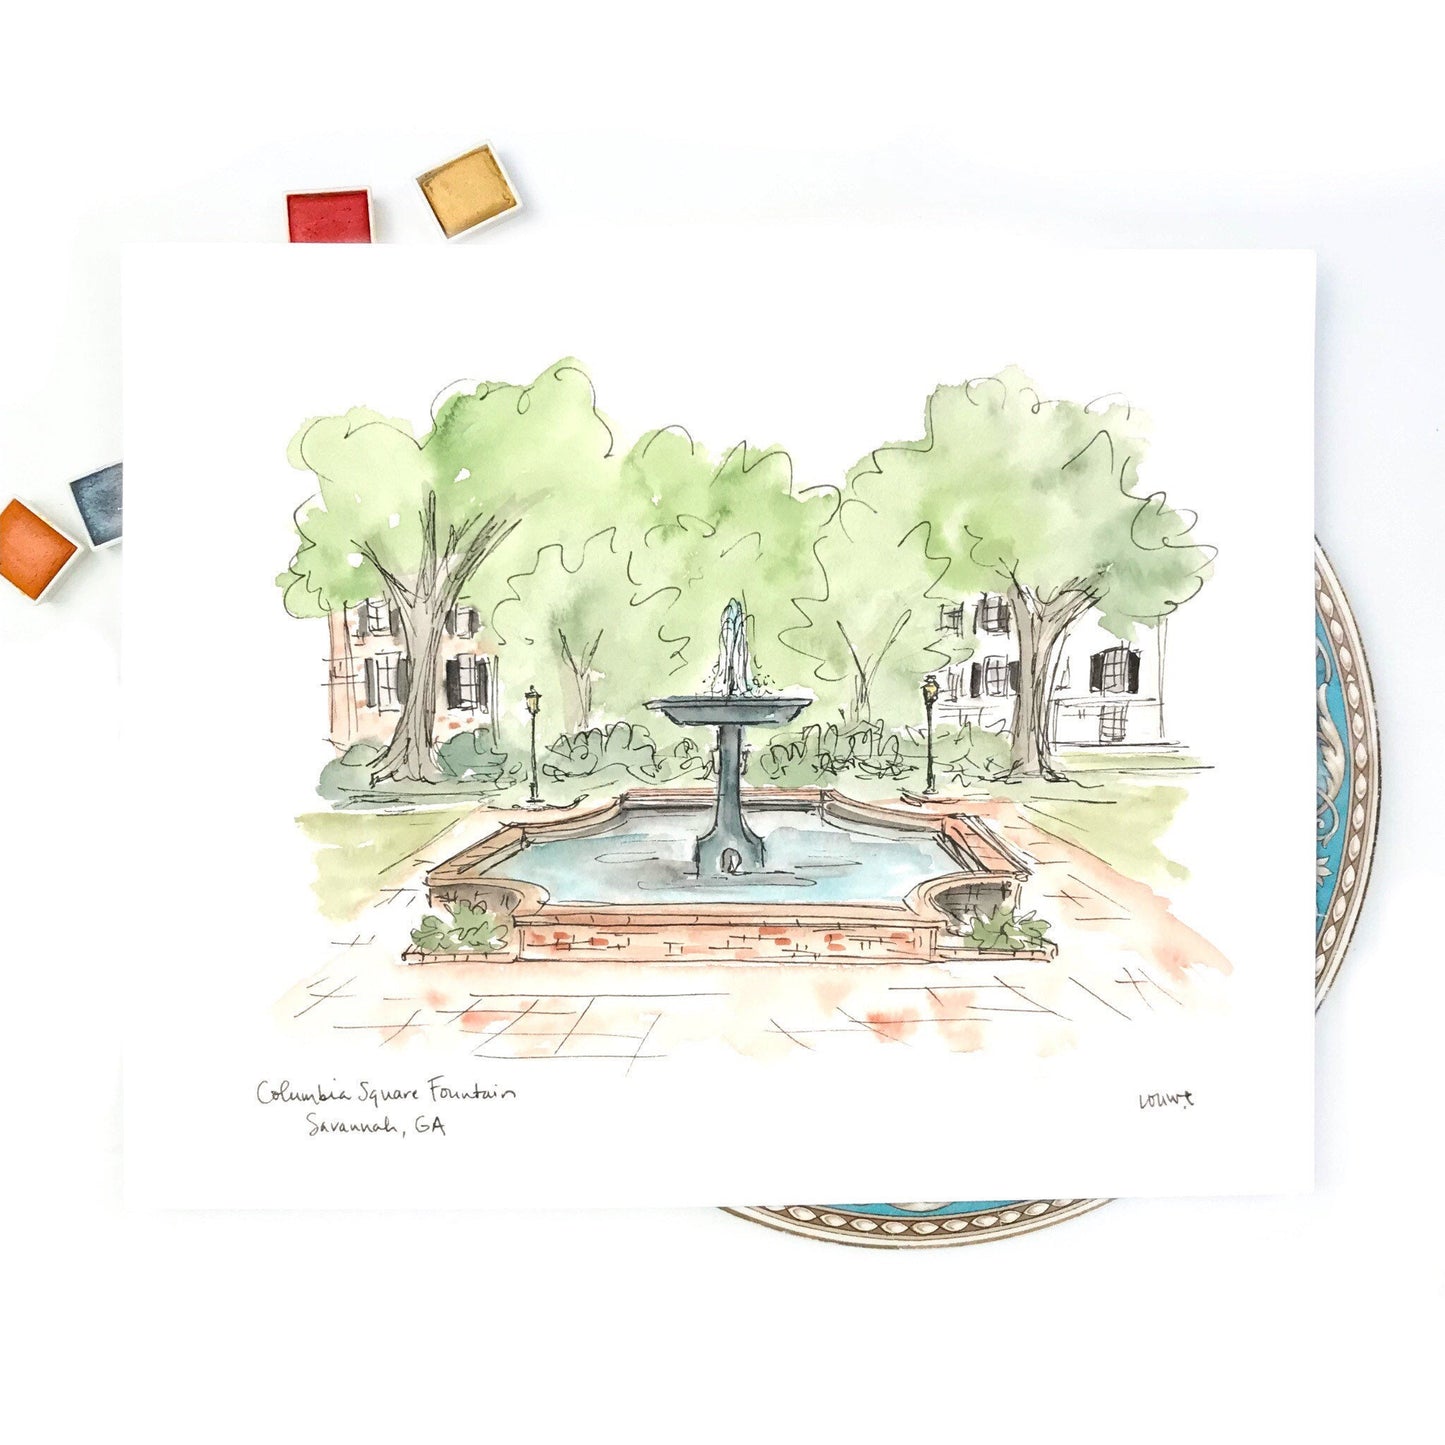 Columbia Square Fountain, Savannah, GA